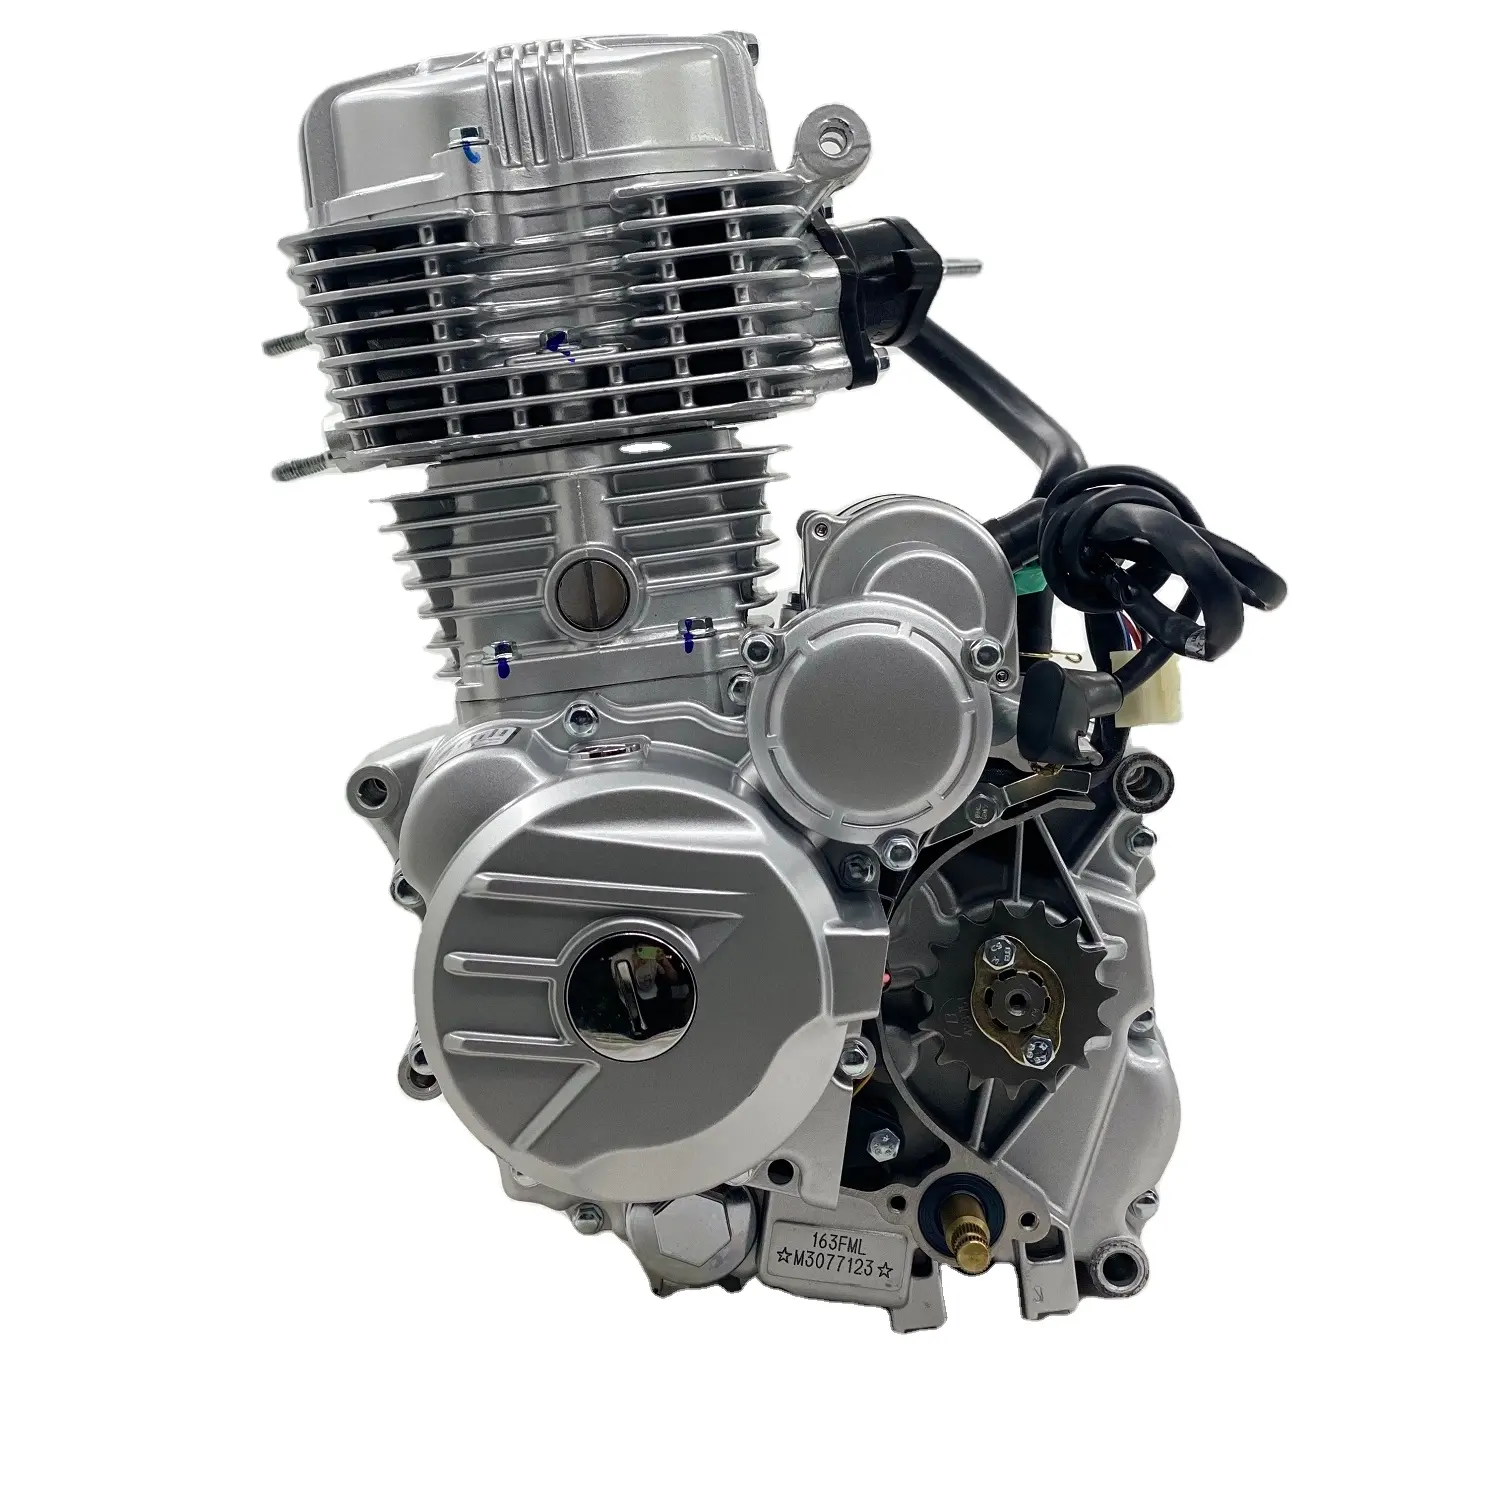 Dayang fábrica 4 válvulas motor refrigerado, motor 250cc para todas as motocicletas, com kit completo de motor potente